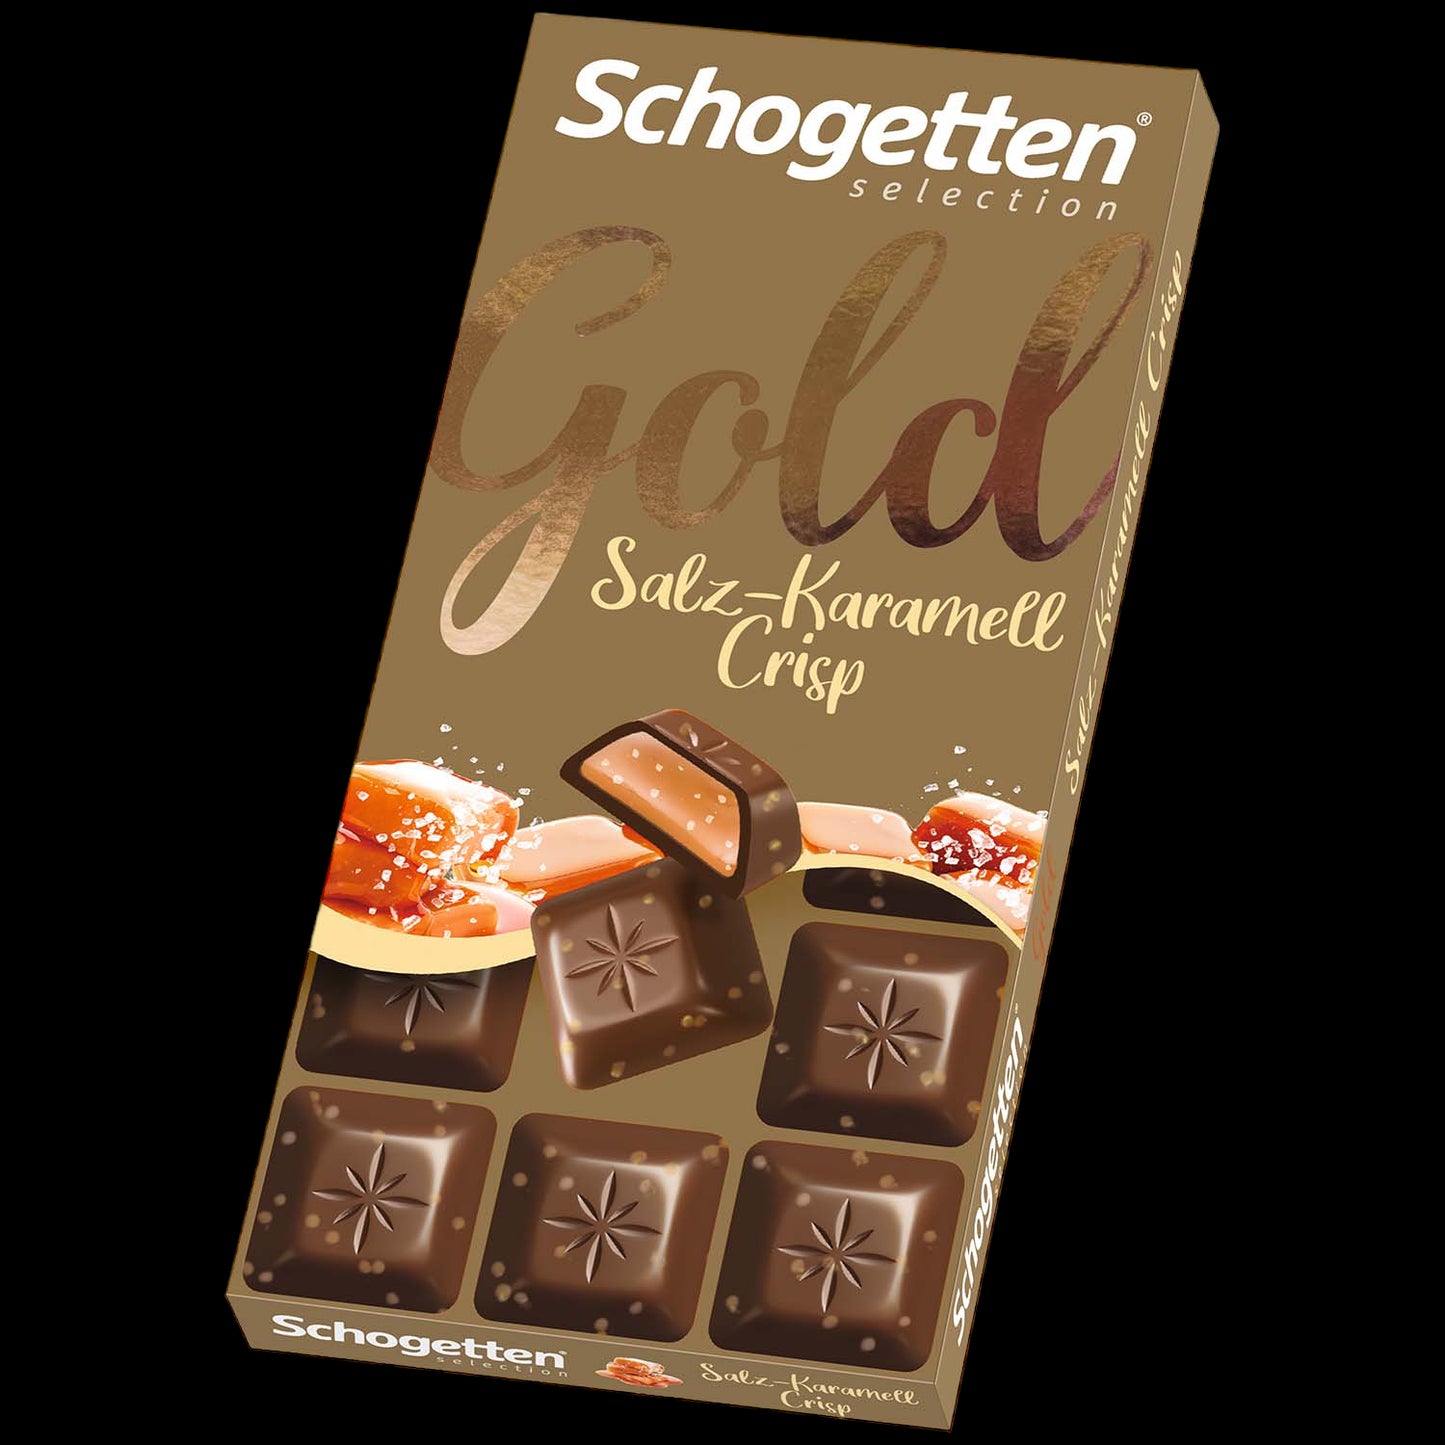 Schogetten Selection Gold Salz-Karamell Crisp 100g